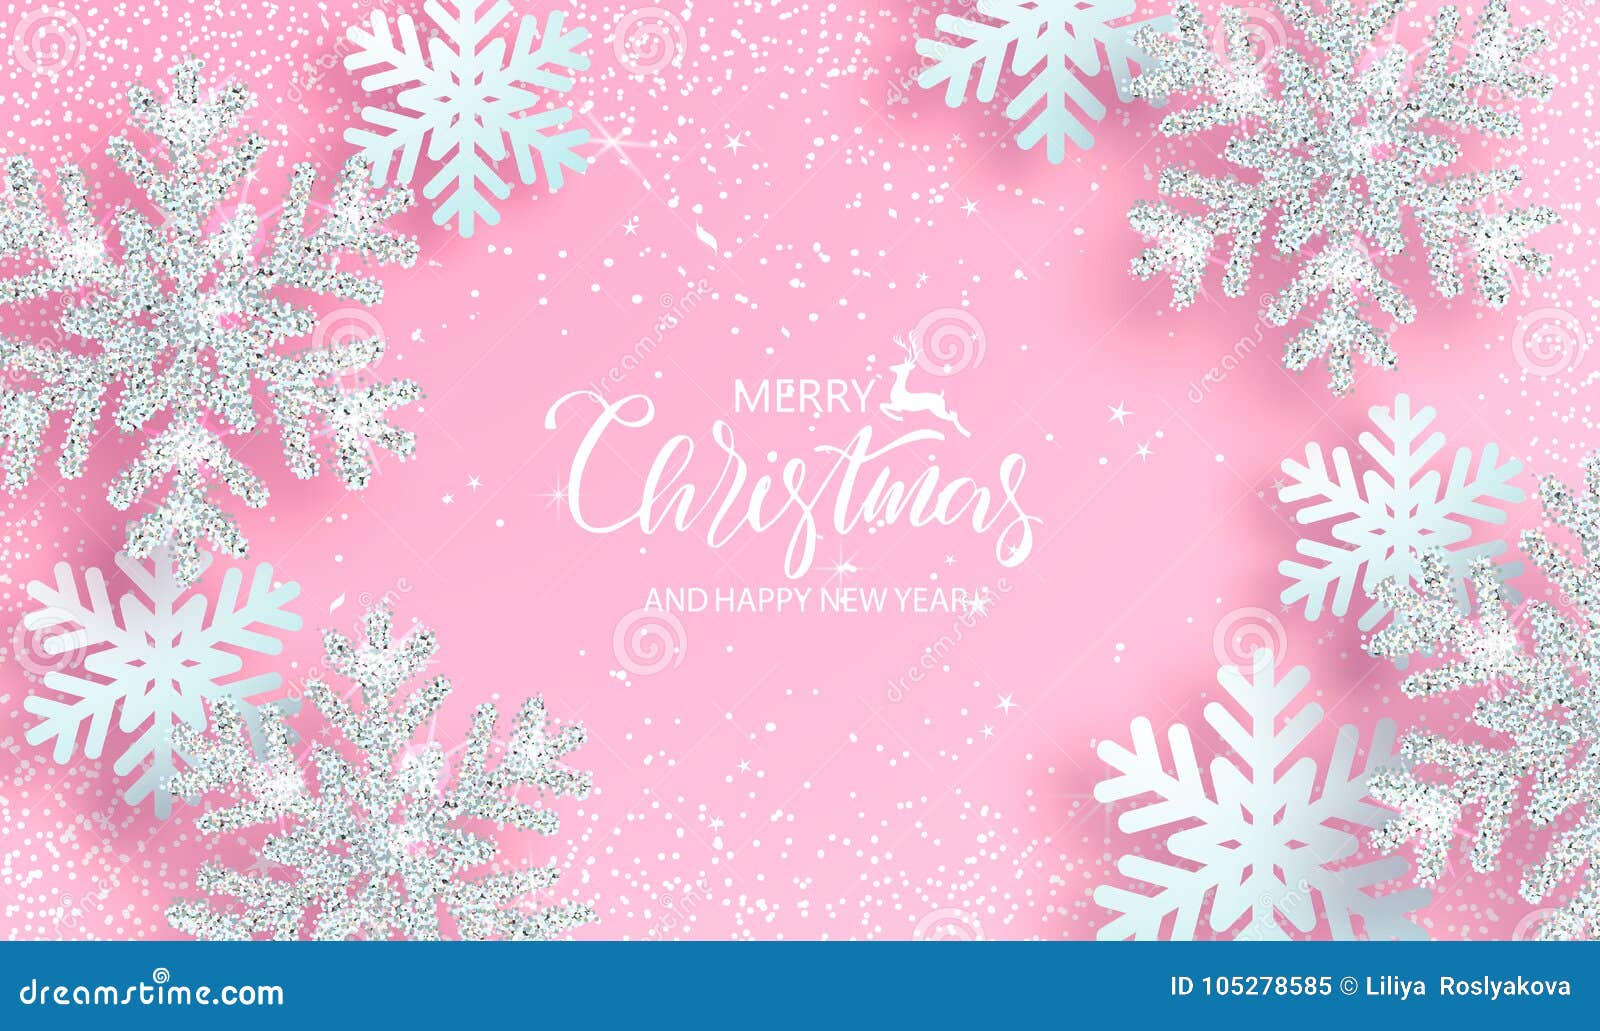 Nền Giáng Sinh hồng với tuyết tản bạc làm nền tảng cho một mùa lễ ấm áp và đầy hạnh phúc. Hình ảnh sự kết hợp giữa màu hồng và tuyết giúp tạo nên không gian thật đặc biệt và lung linh, giúp bạn tràn đầy niềm vui và cảm xúc.